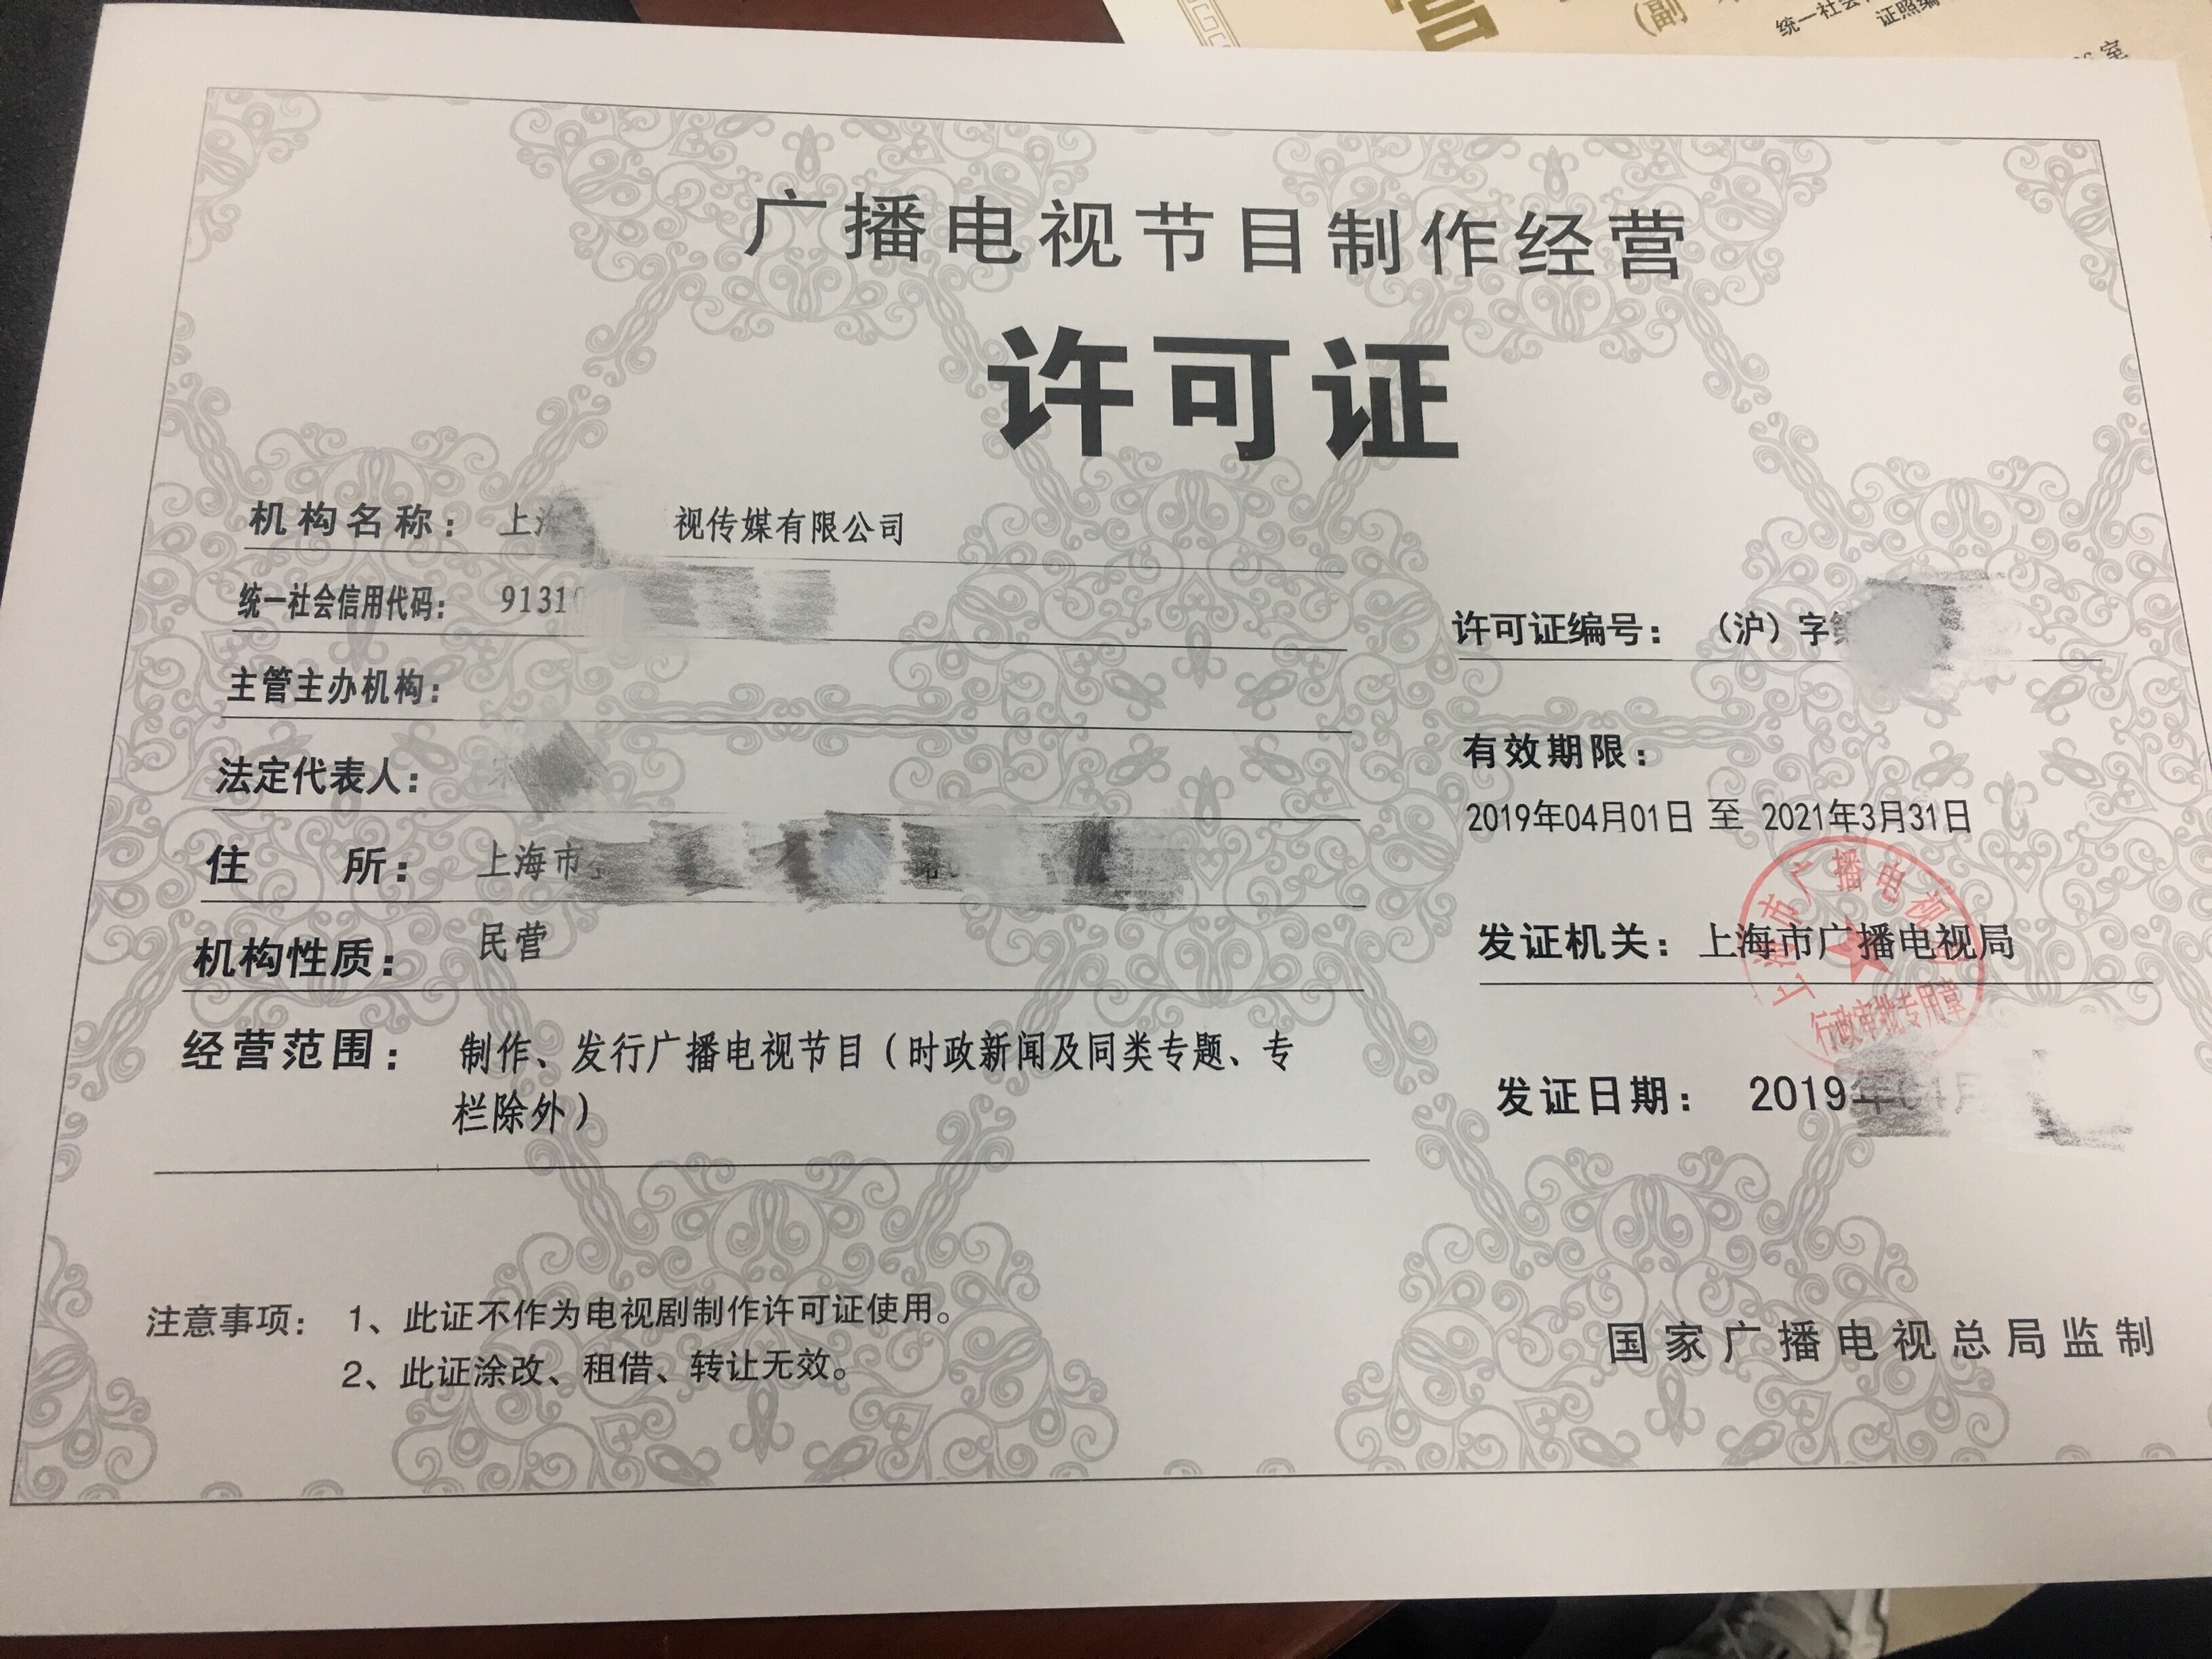 上海办理《广播电视节目制作经营许可证》